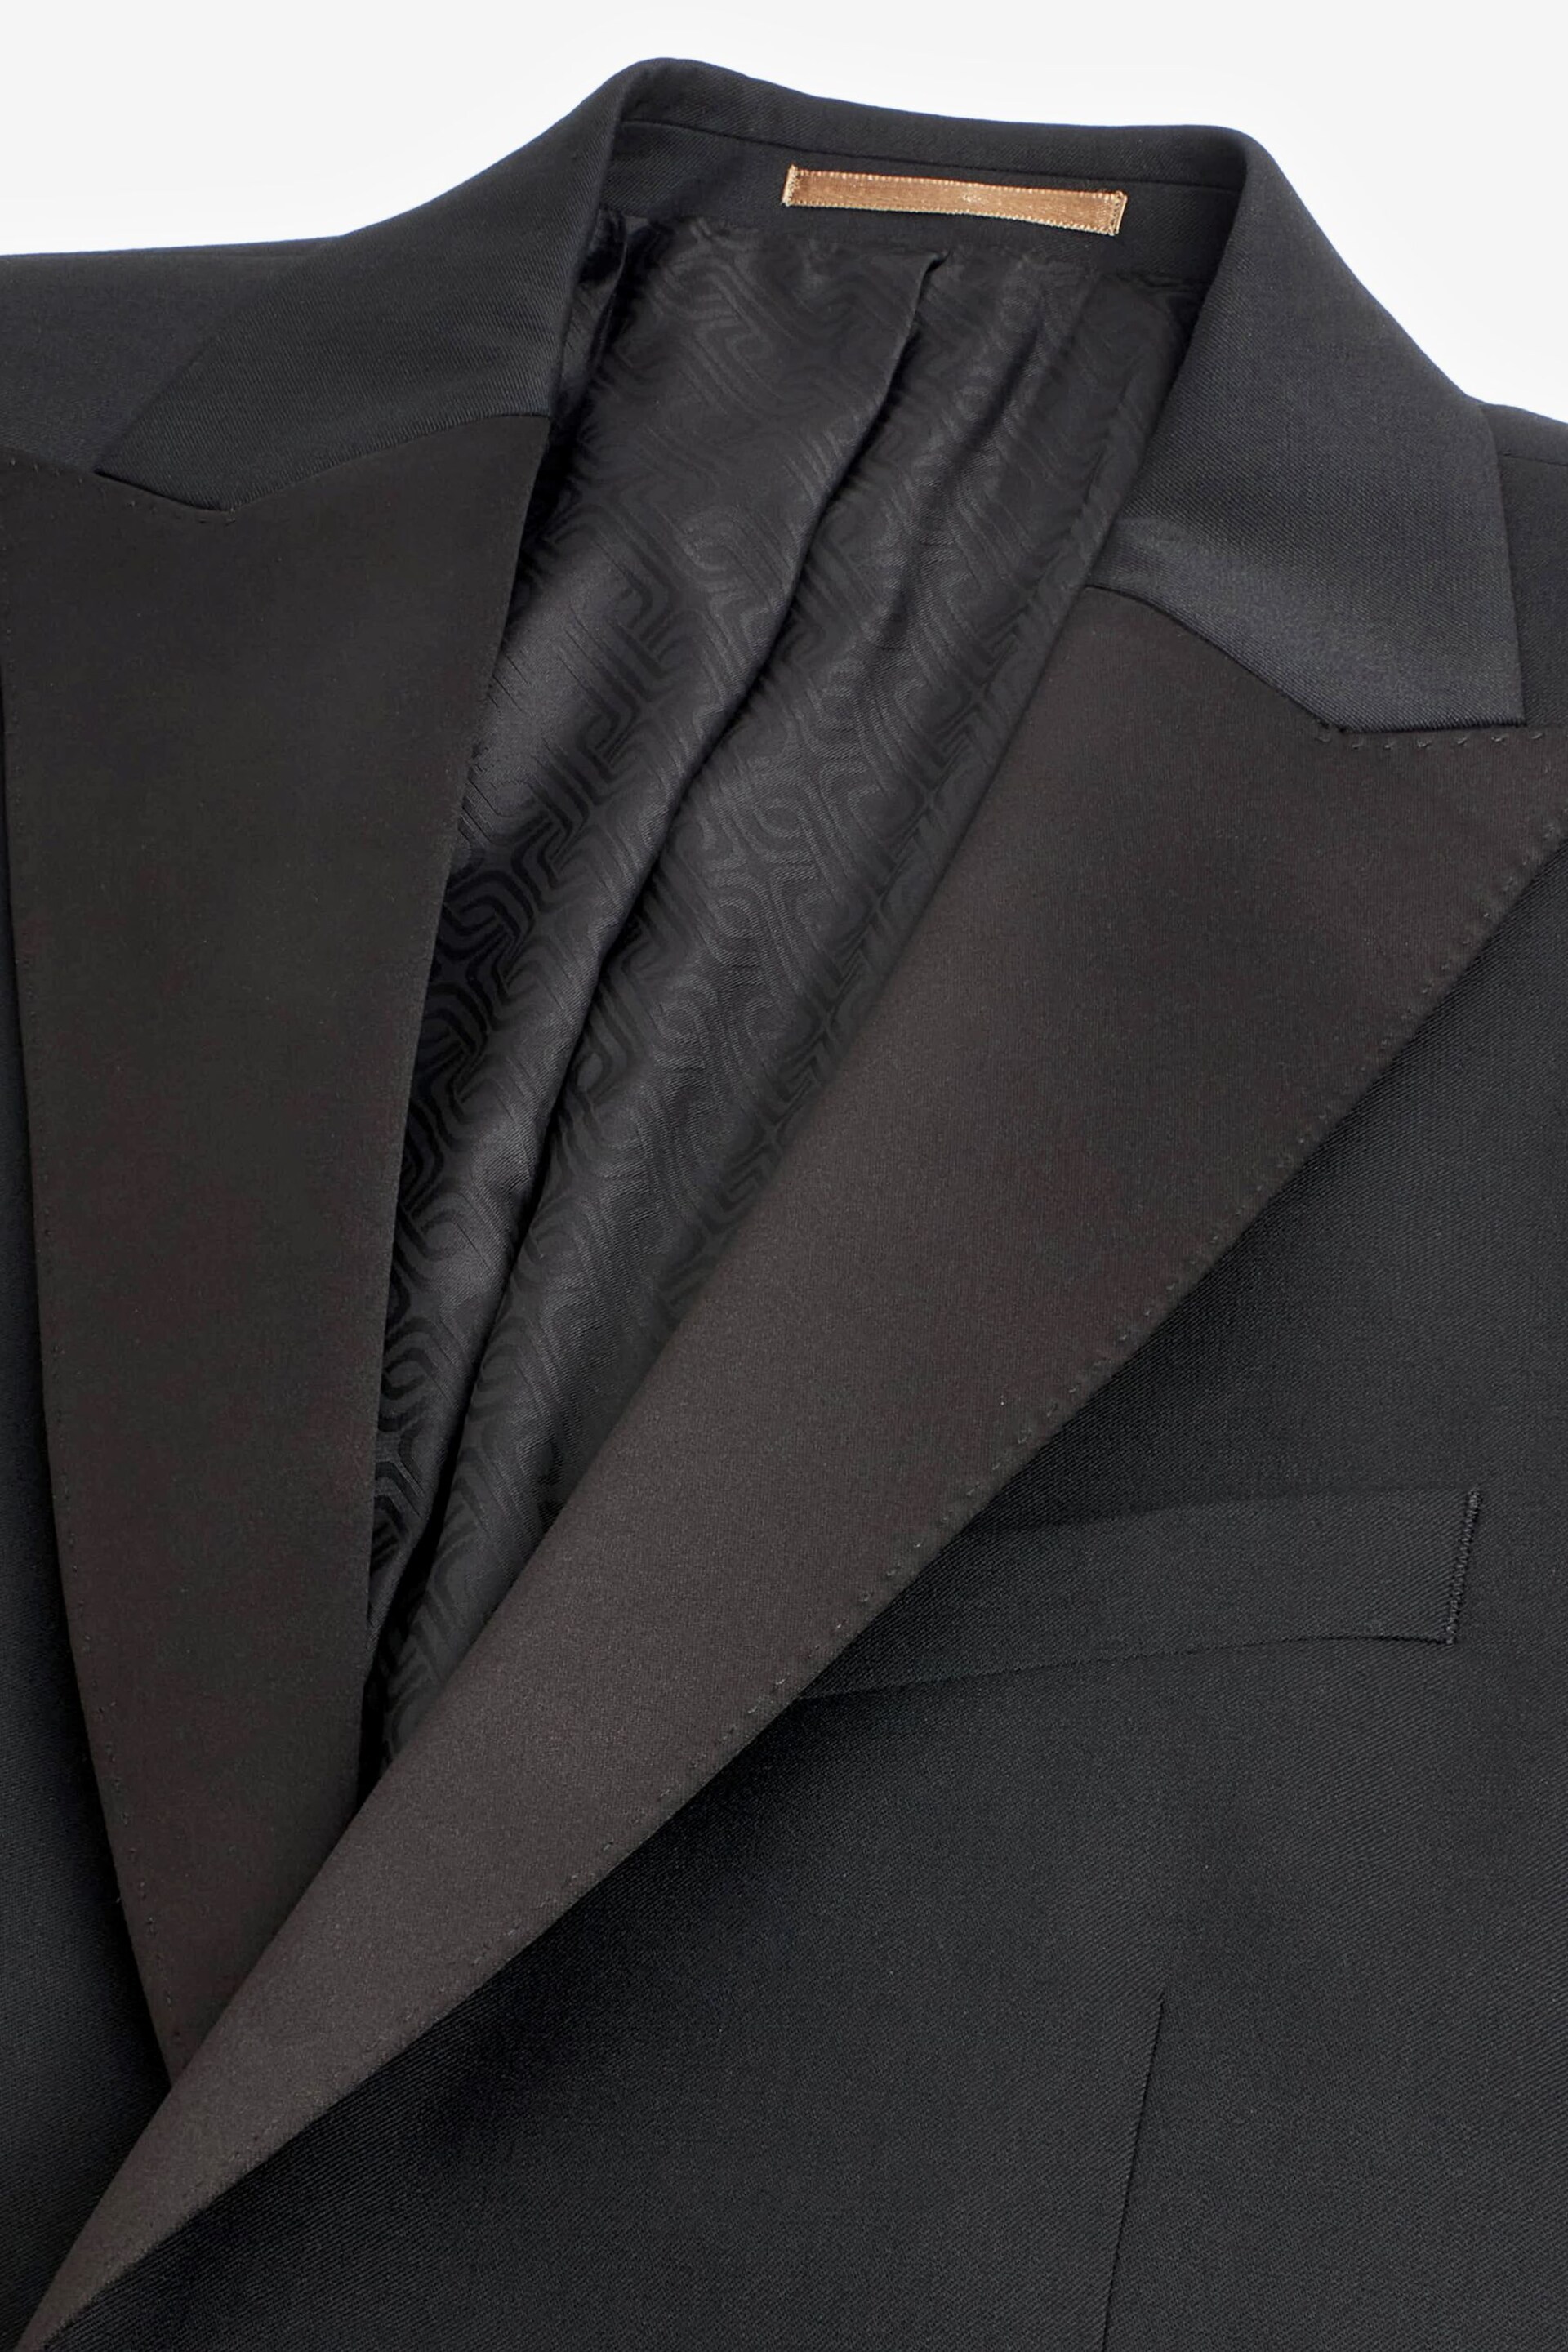 Black Wool Blend Shiny Tuxedo Suit Jacket - Image 6 of 11